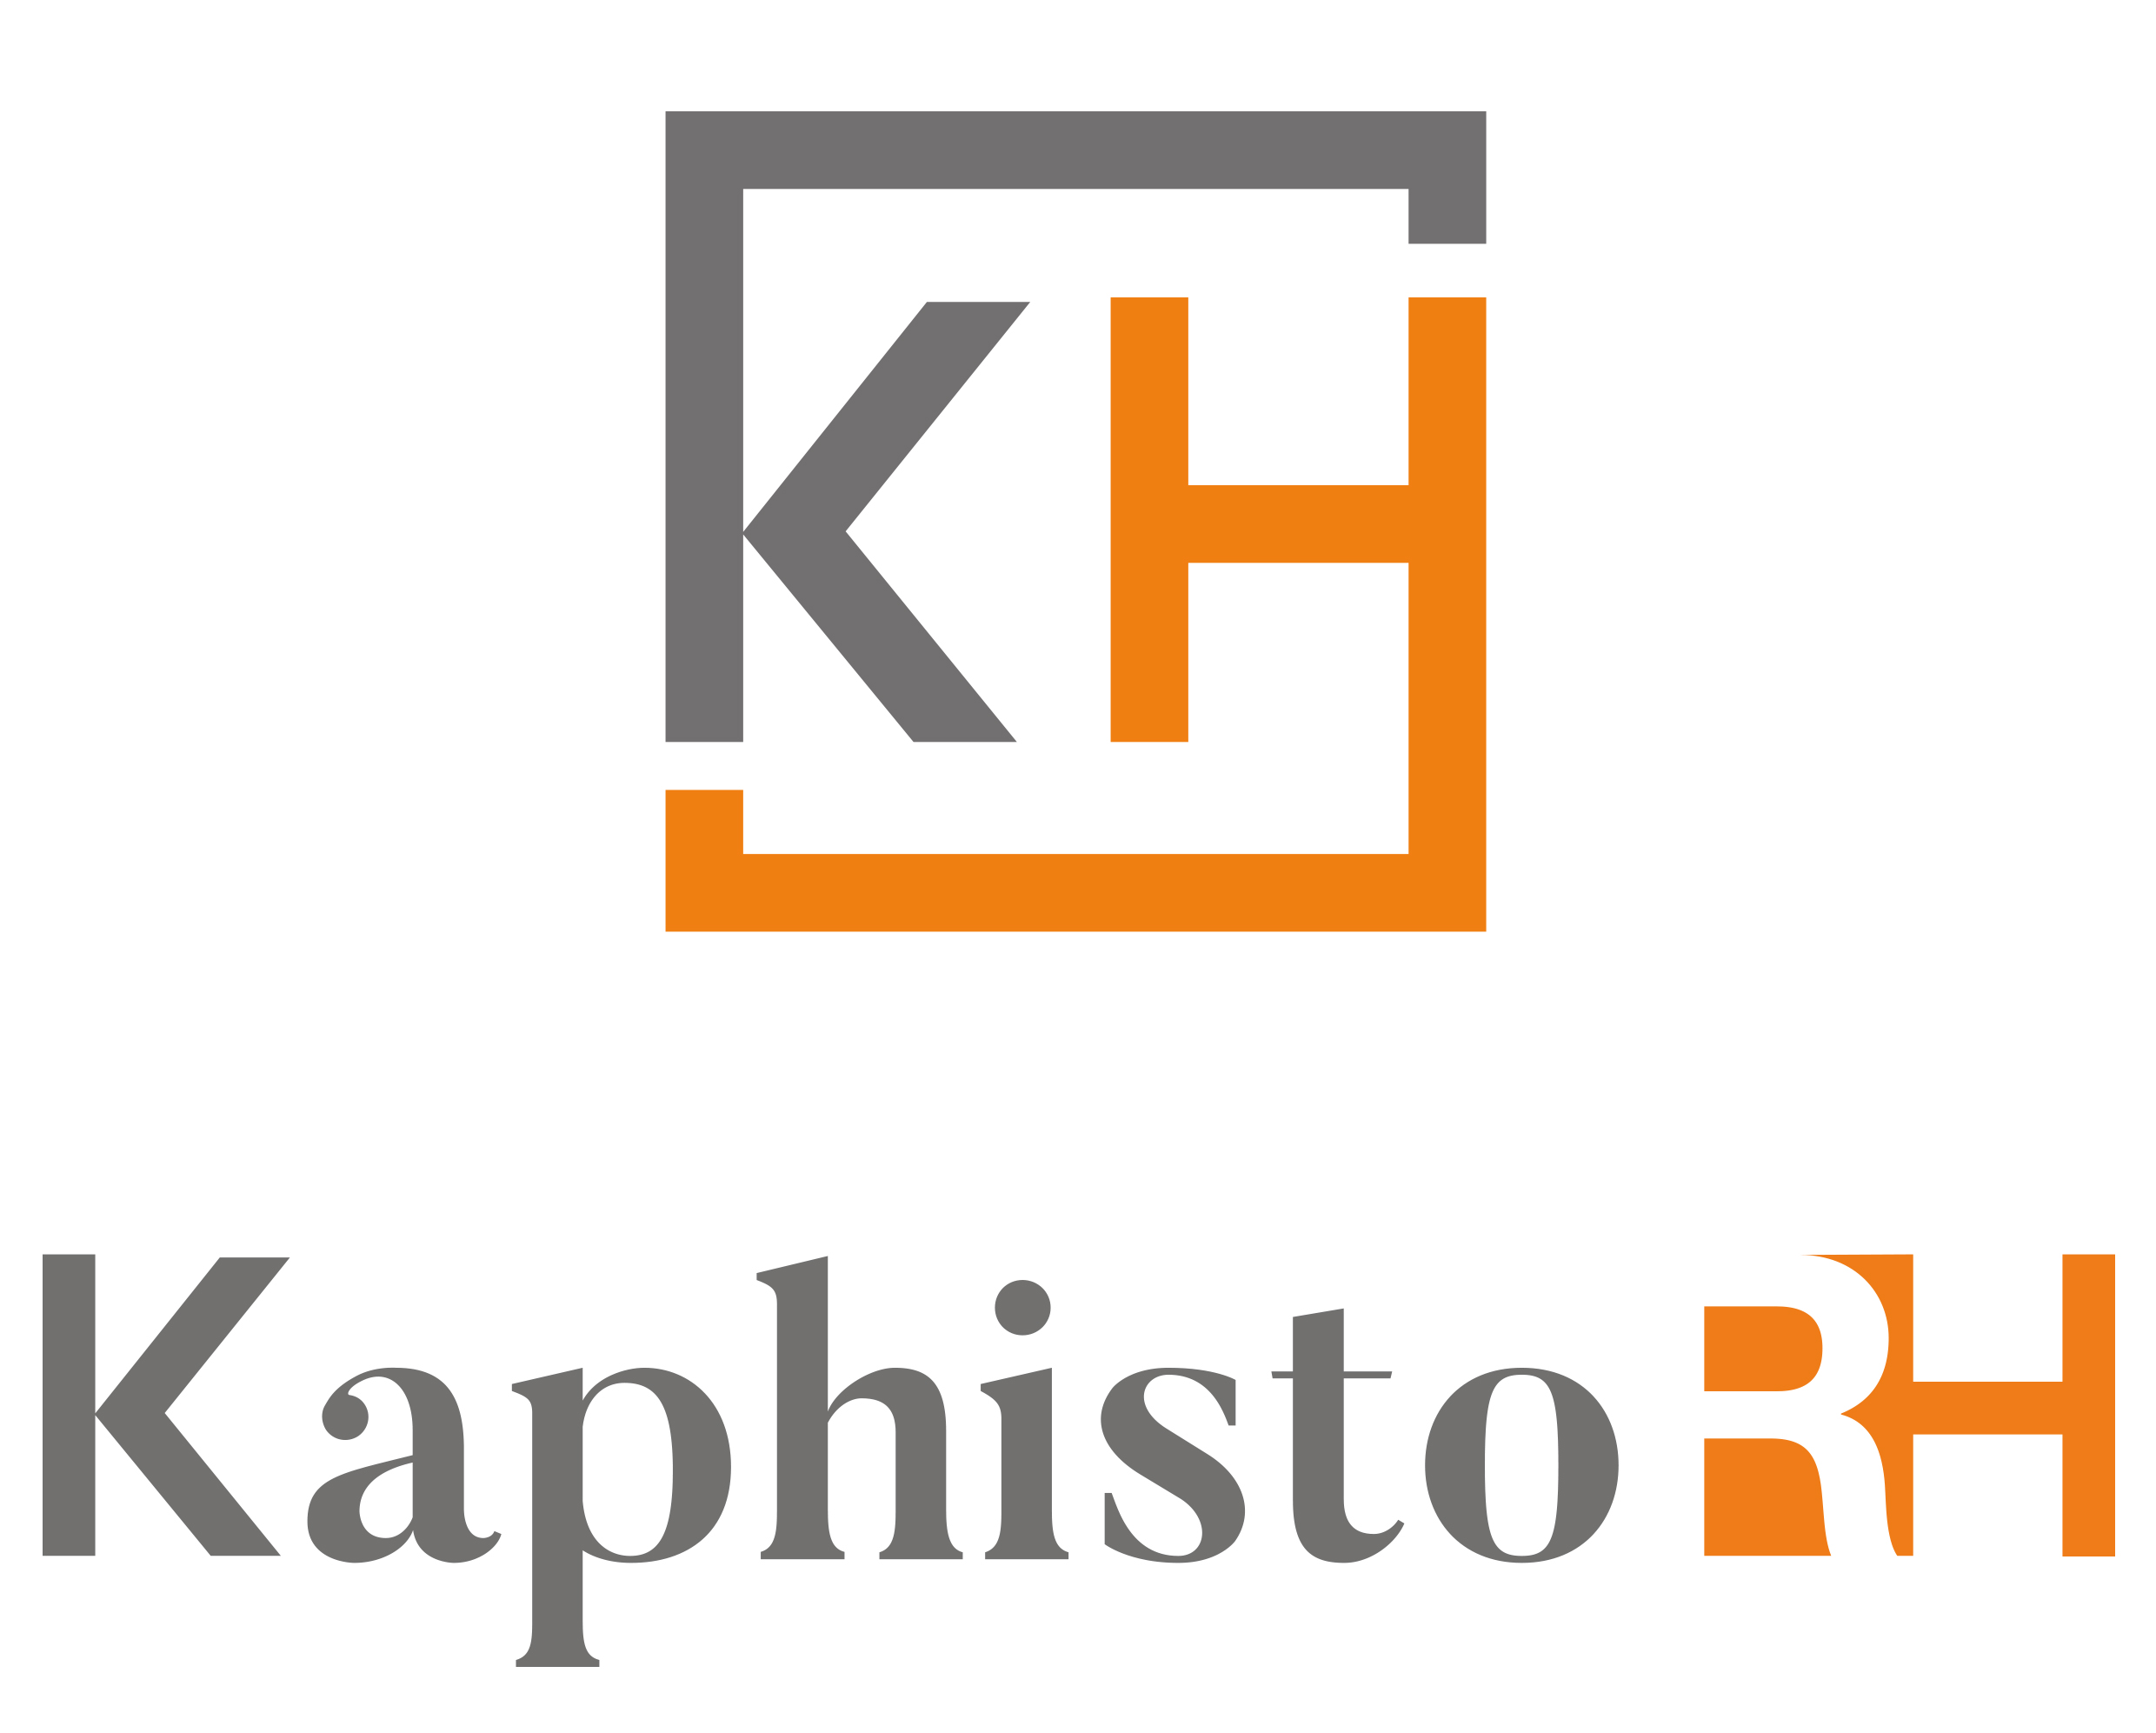 KAPHISTO RH